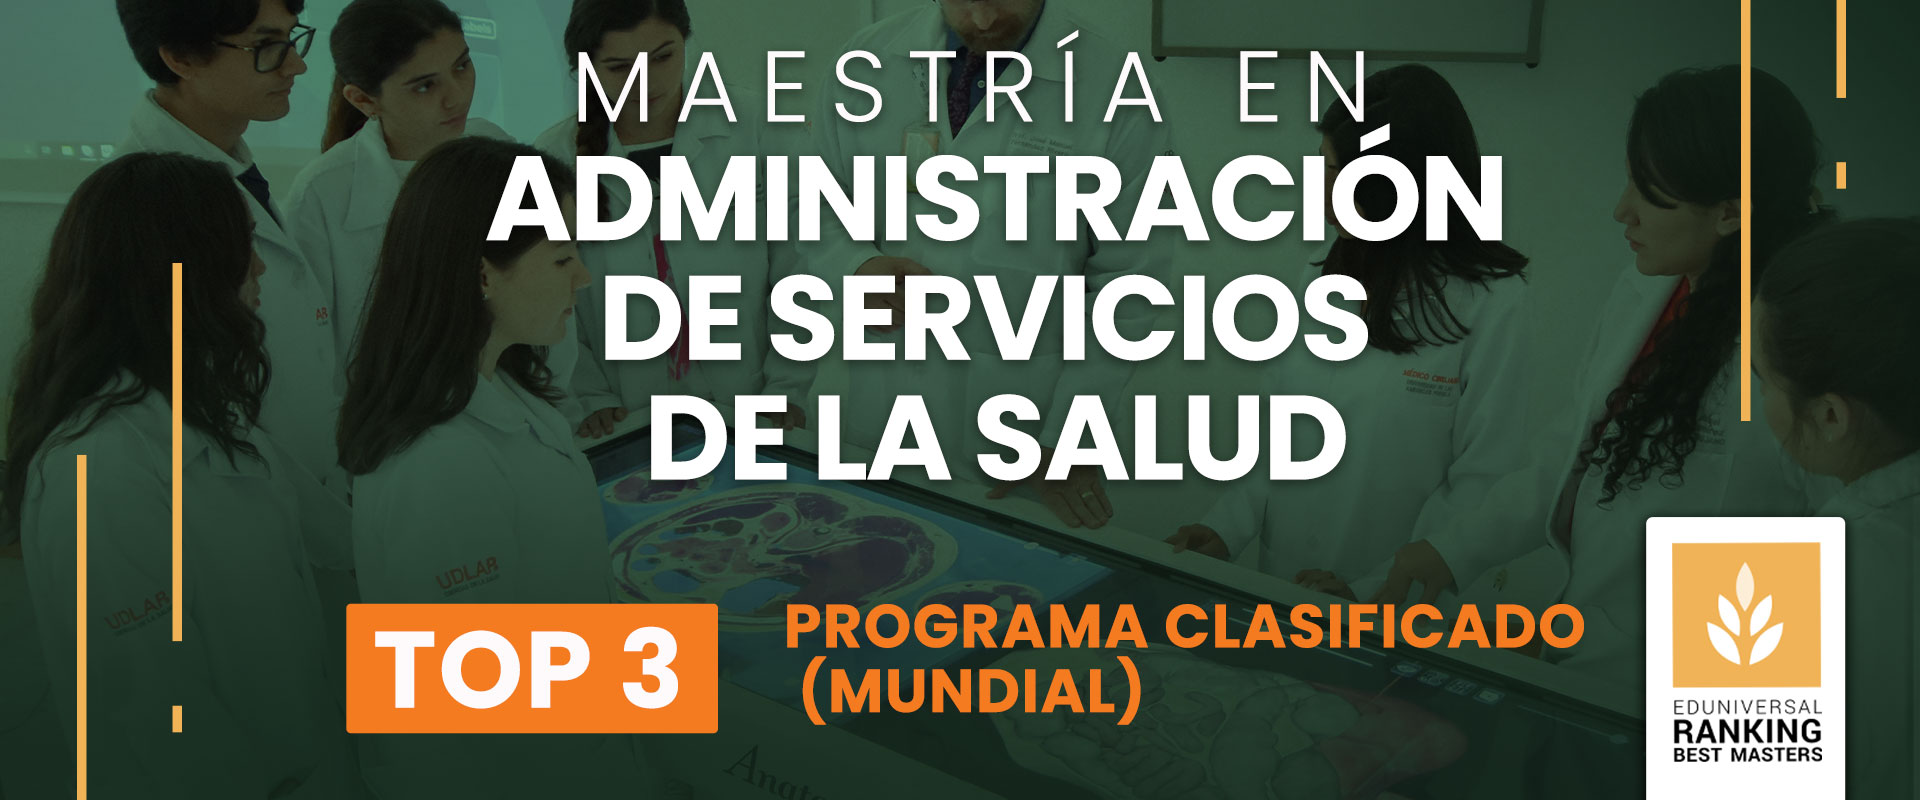 Maestría en Administración de Servicios de la Salud - Universidad de las Américas Puebla (UDLAP)